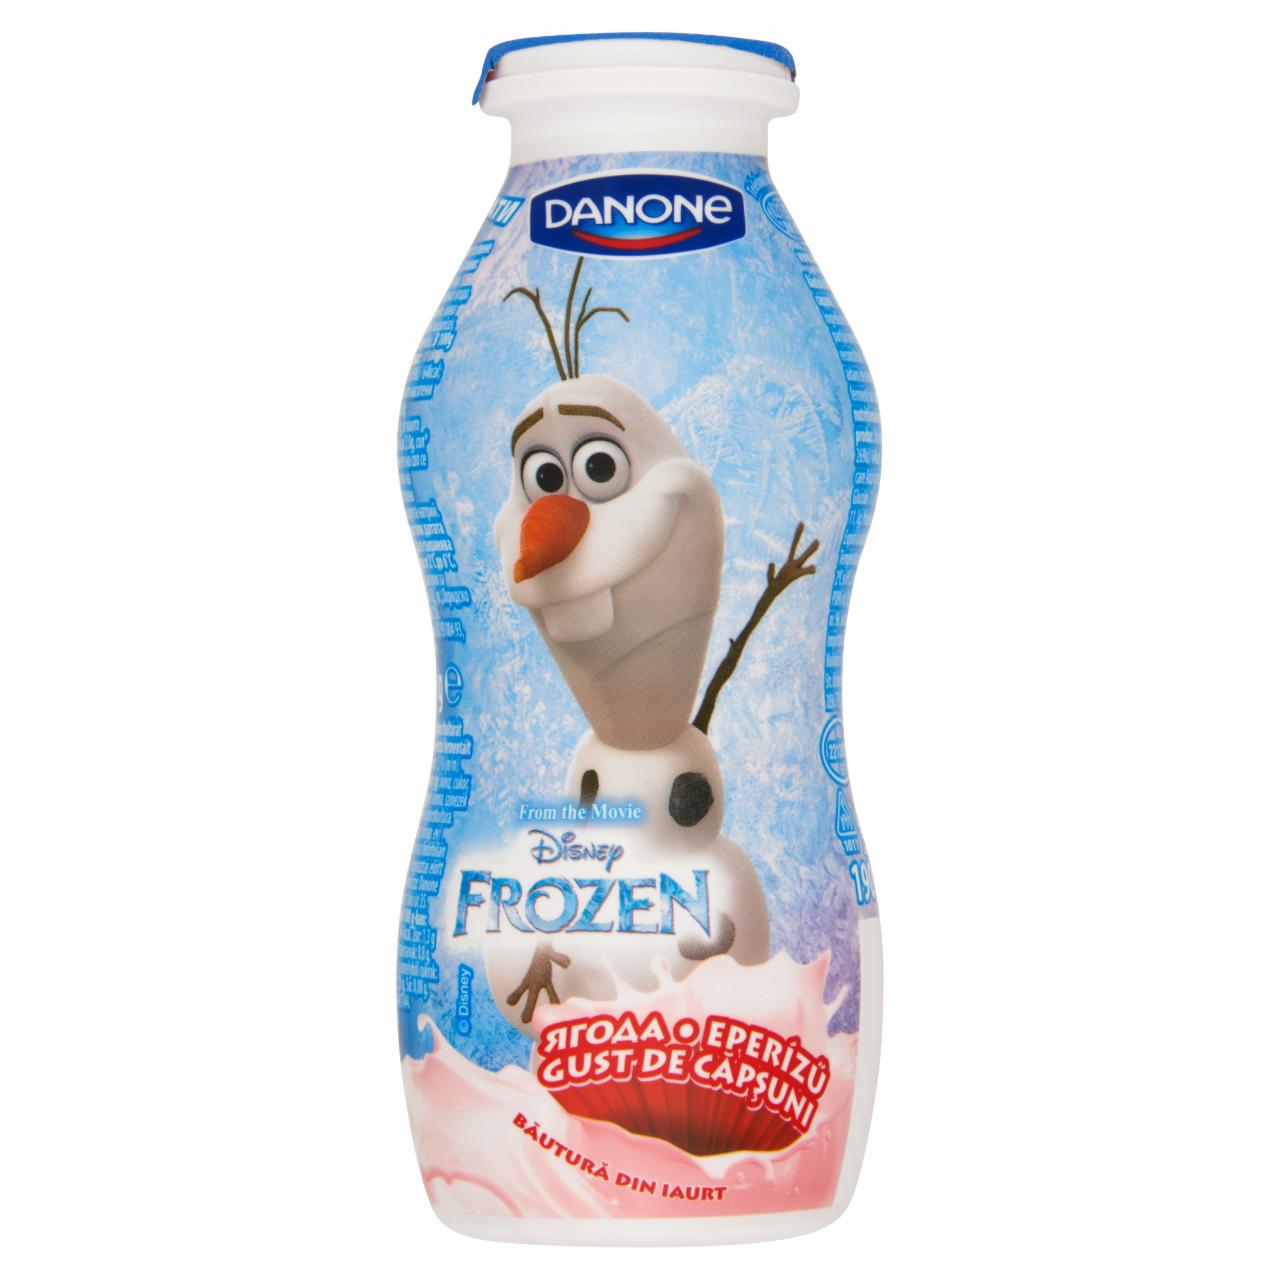 Képek - Danone Frozen élő joghurtkultúrát tartalmazó, eperízű fermentált ital 190 g